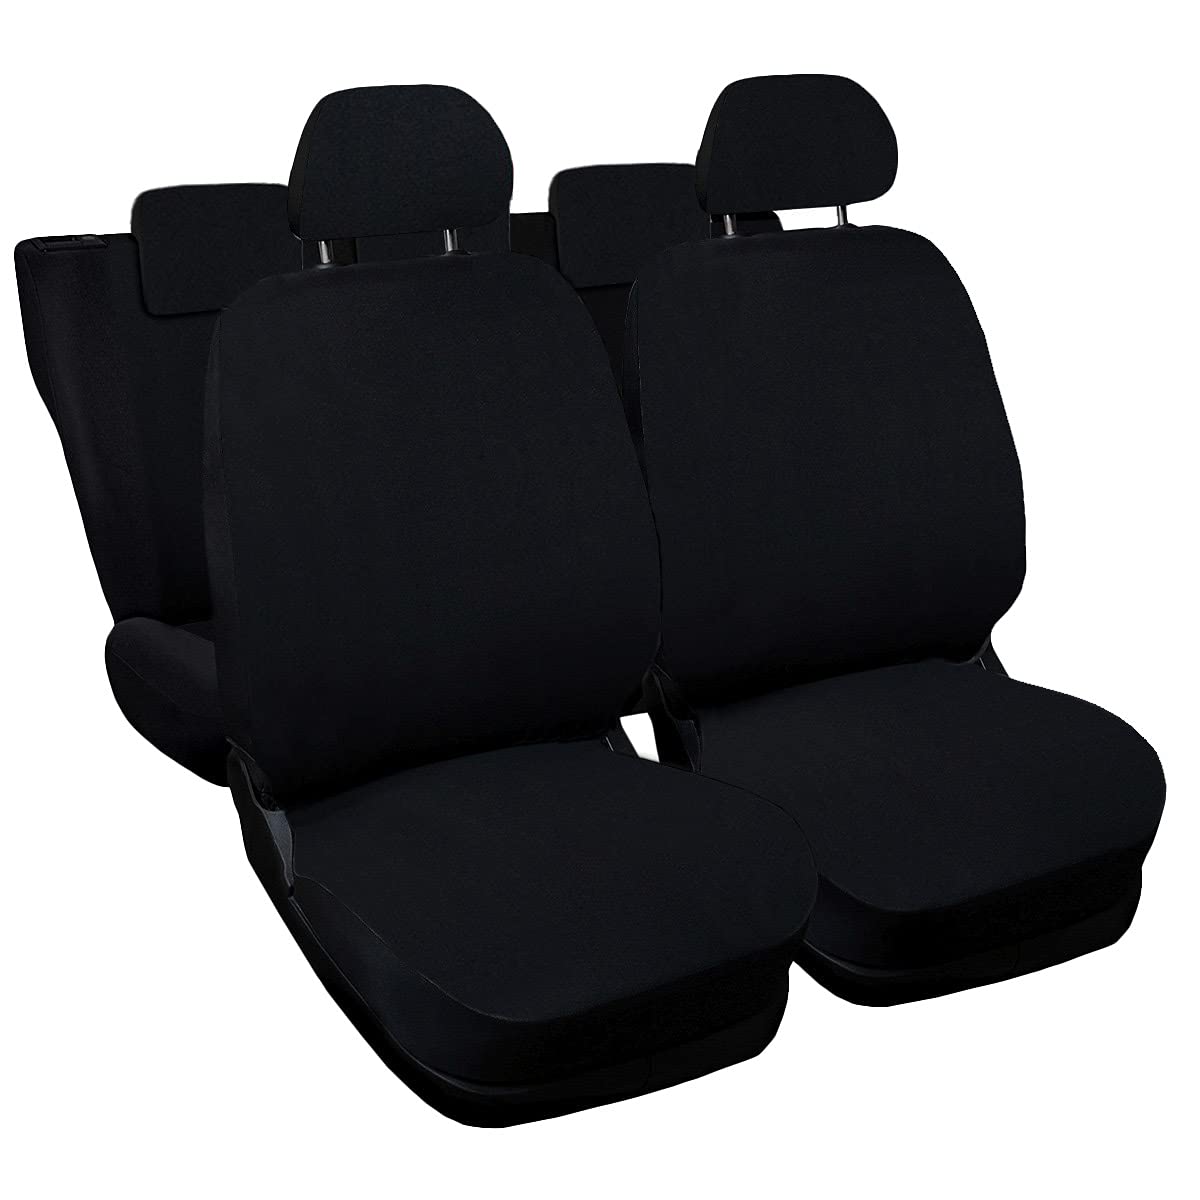 Auto Accessori Lupex Zip_ Universal-Autositzbezüge, Universal-Set, für Vorder- und Rücksitze, Airbag-kompatibel, Zubehör für Innen- und Auto-Zubehör (schwarz) von Auto Accessori Lupex